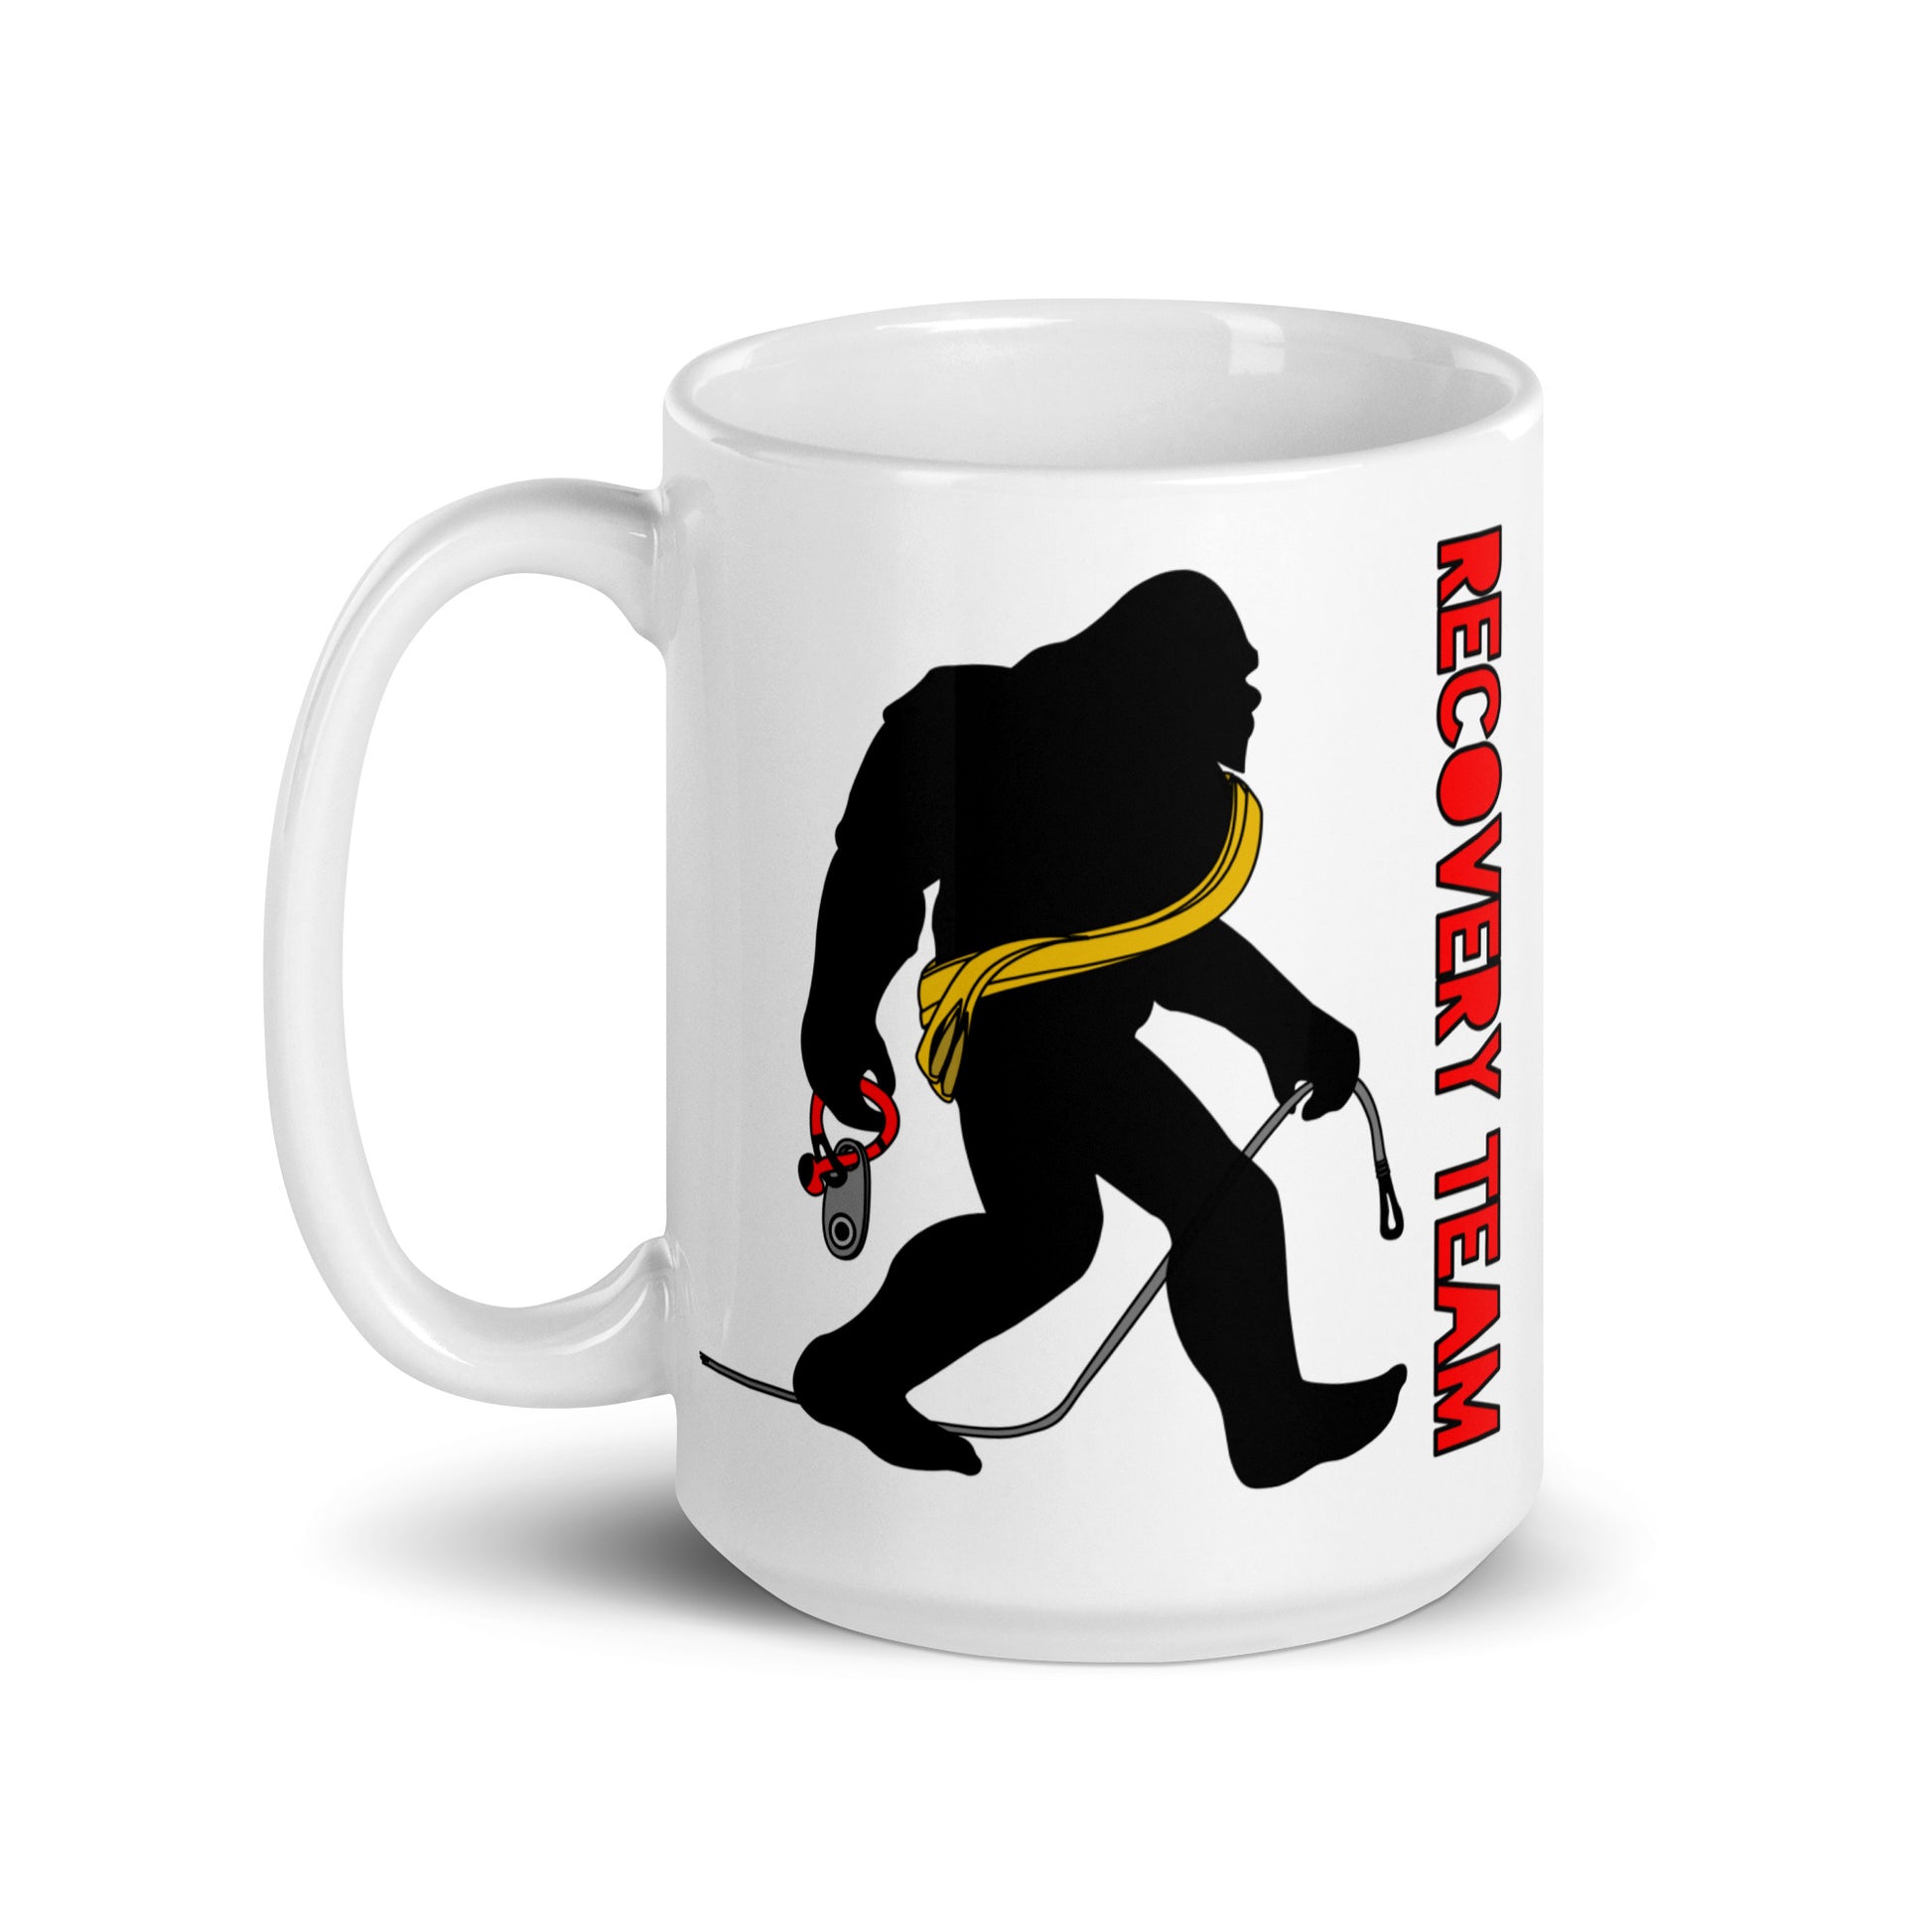 Bigfoot Recovery Team. 15oz coffee mug. side view. overland365.com